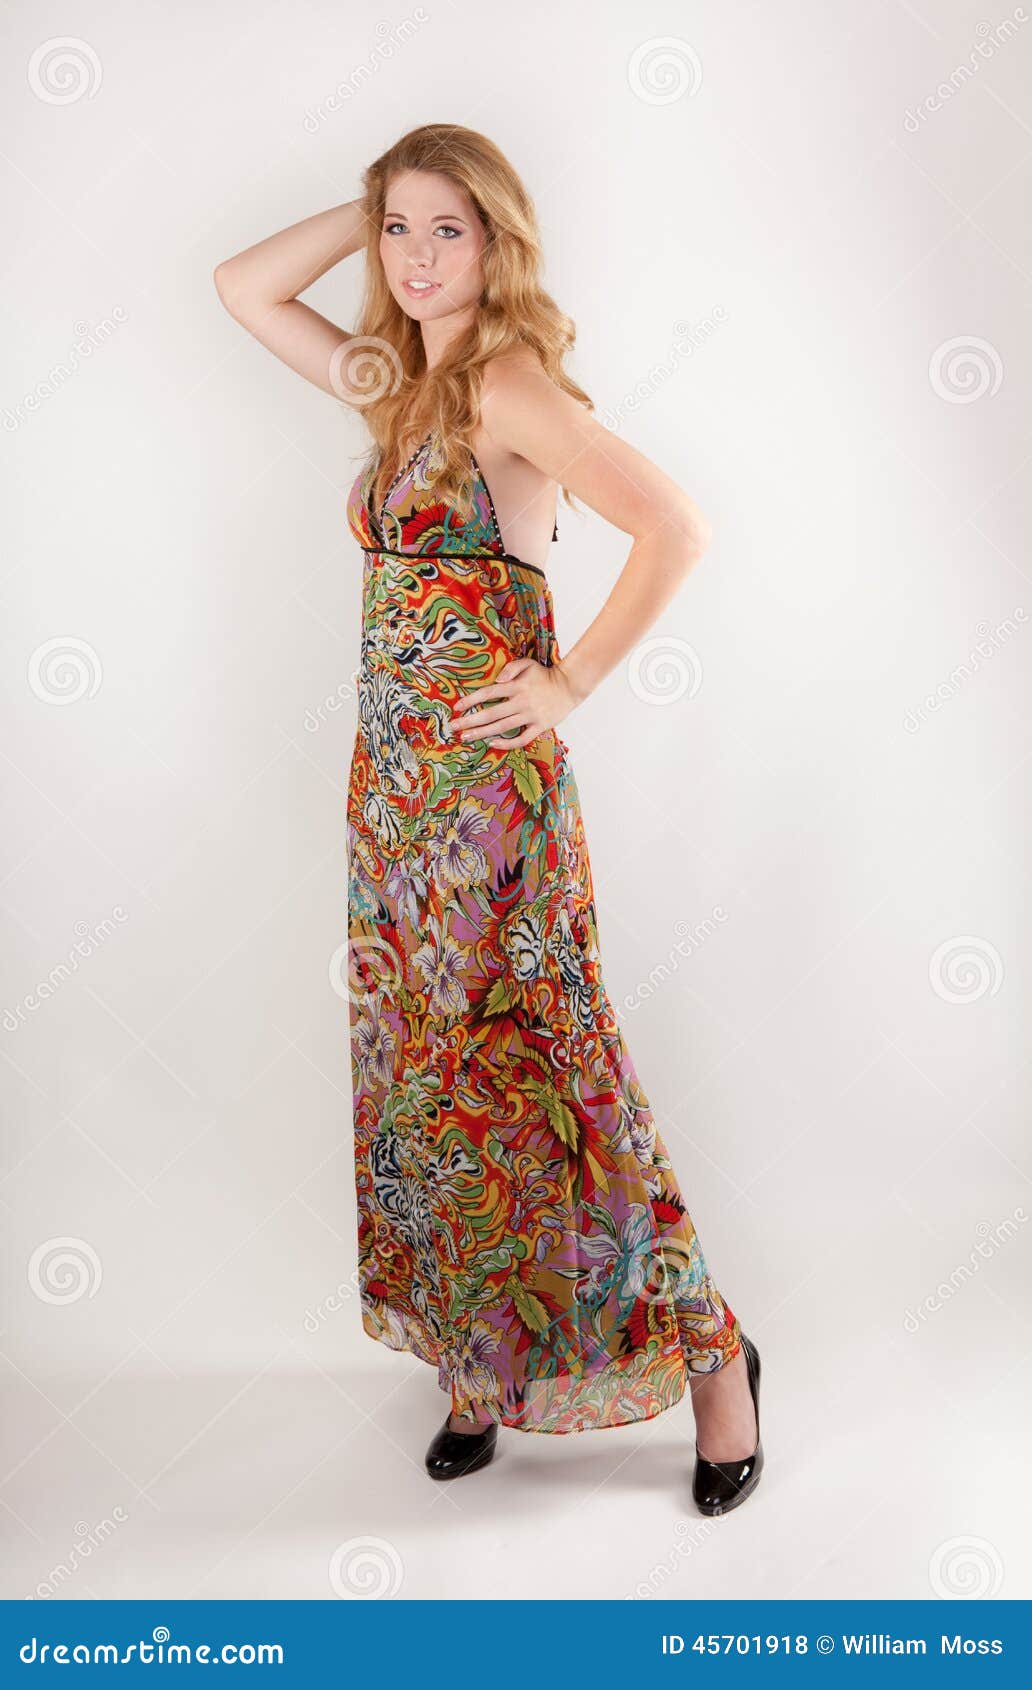 Grosse Frau Im Bunten Kleid Stockfoto Bild Von Augen 45701918